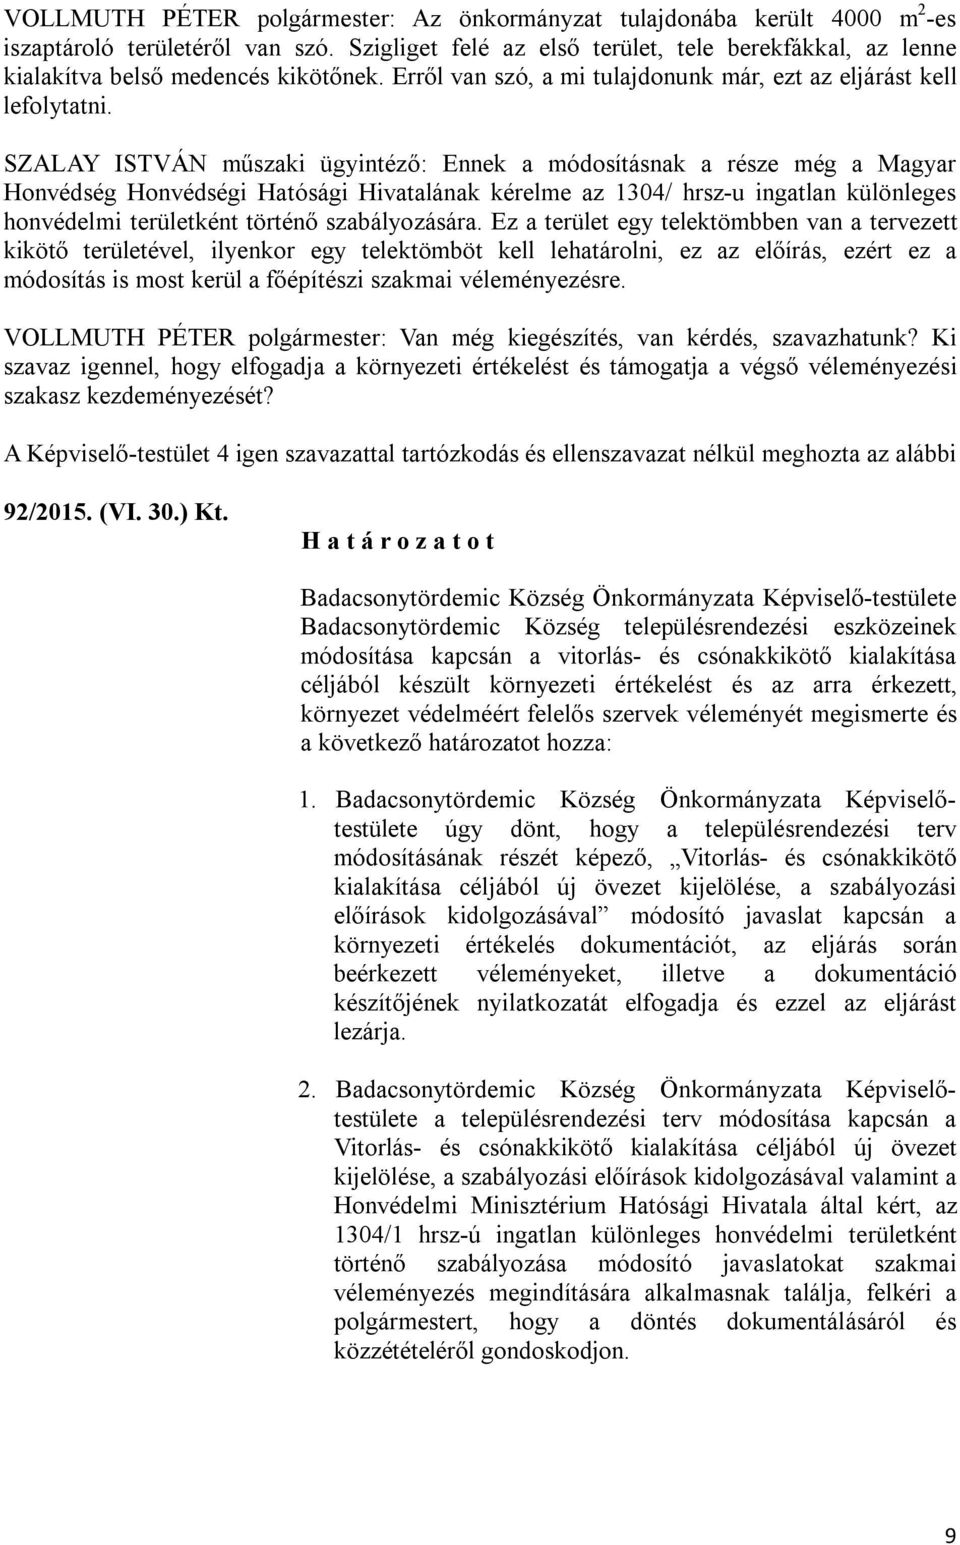 SZALAY ISTVÁN műszaki ügyintéző: Ennek a módosításnak a része még a Magyar Honvédség Honvédségi Hatósági Hivatalának kérelme az 1304/ hrsz-u ingatlan különleges honvédelmi területként történő